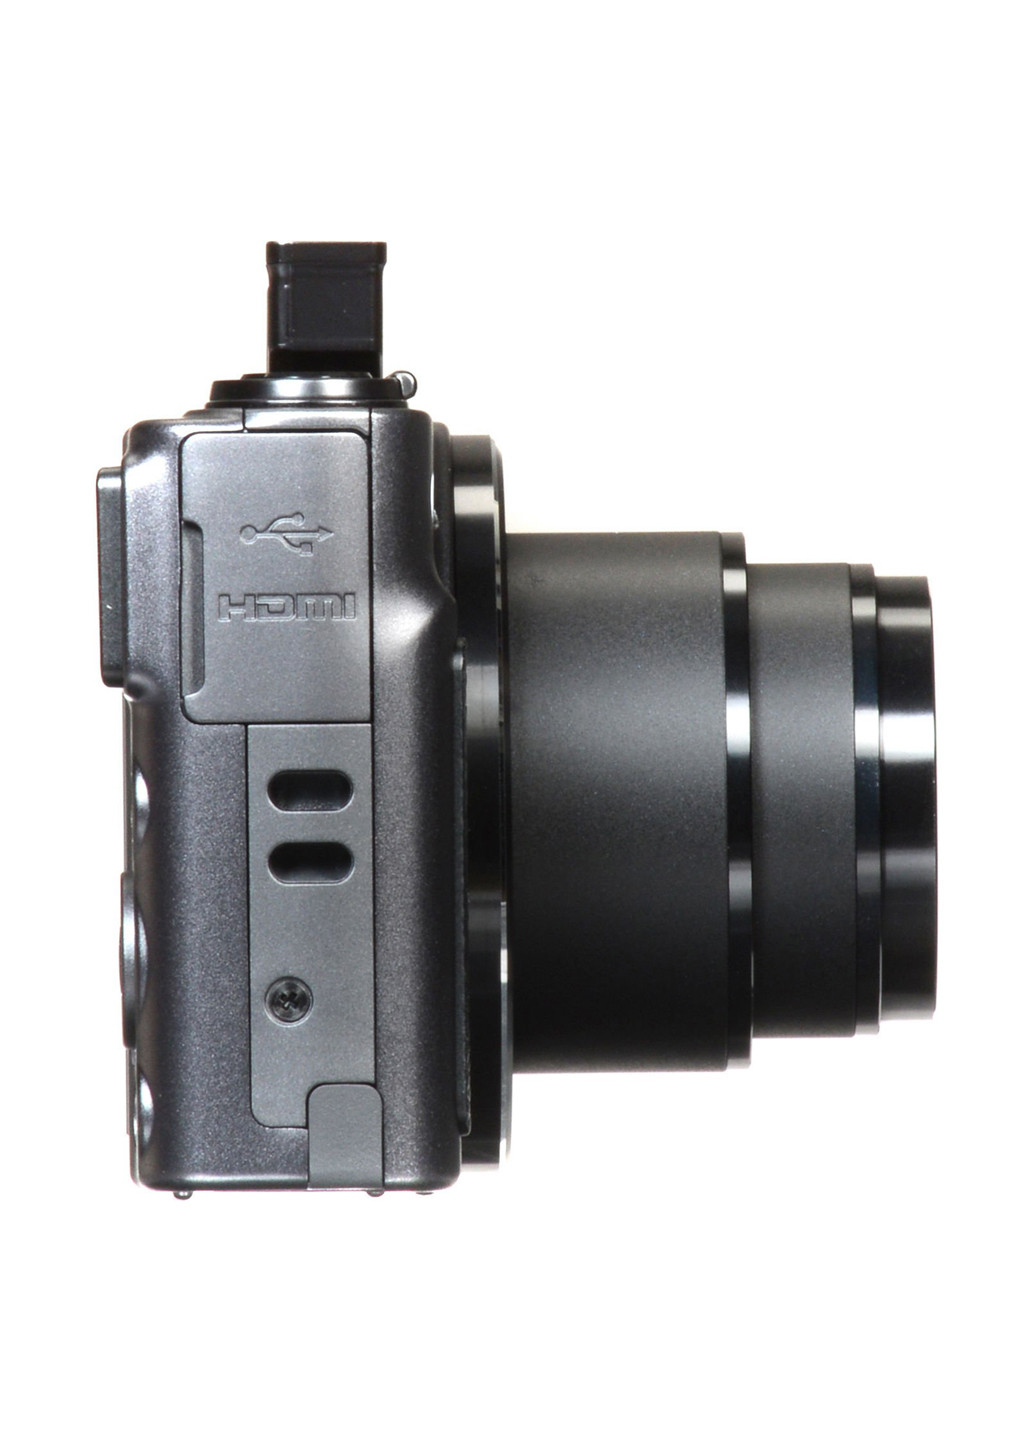 Компактная фотокамера Canon Powershot SX620 HS Black чёрная